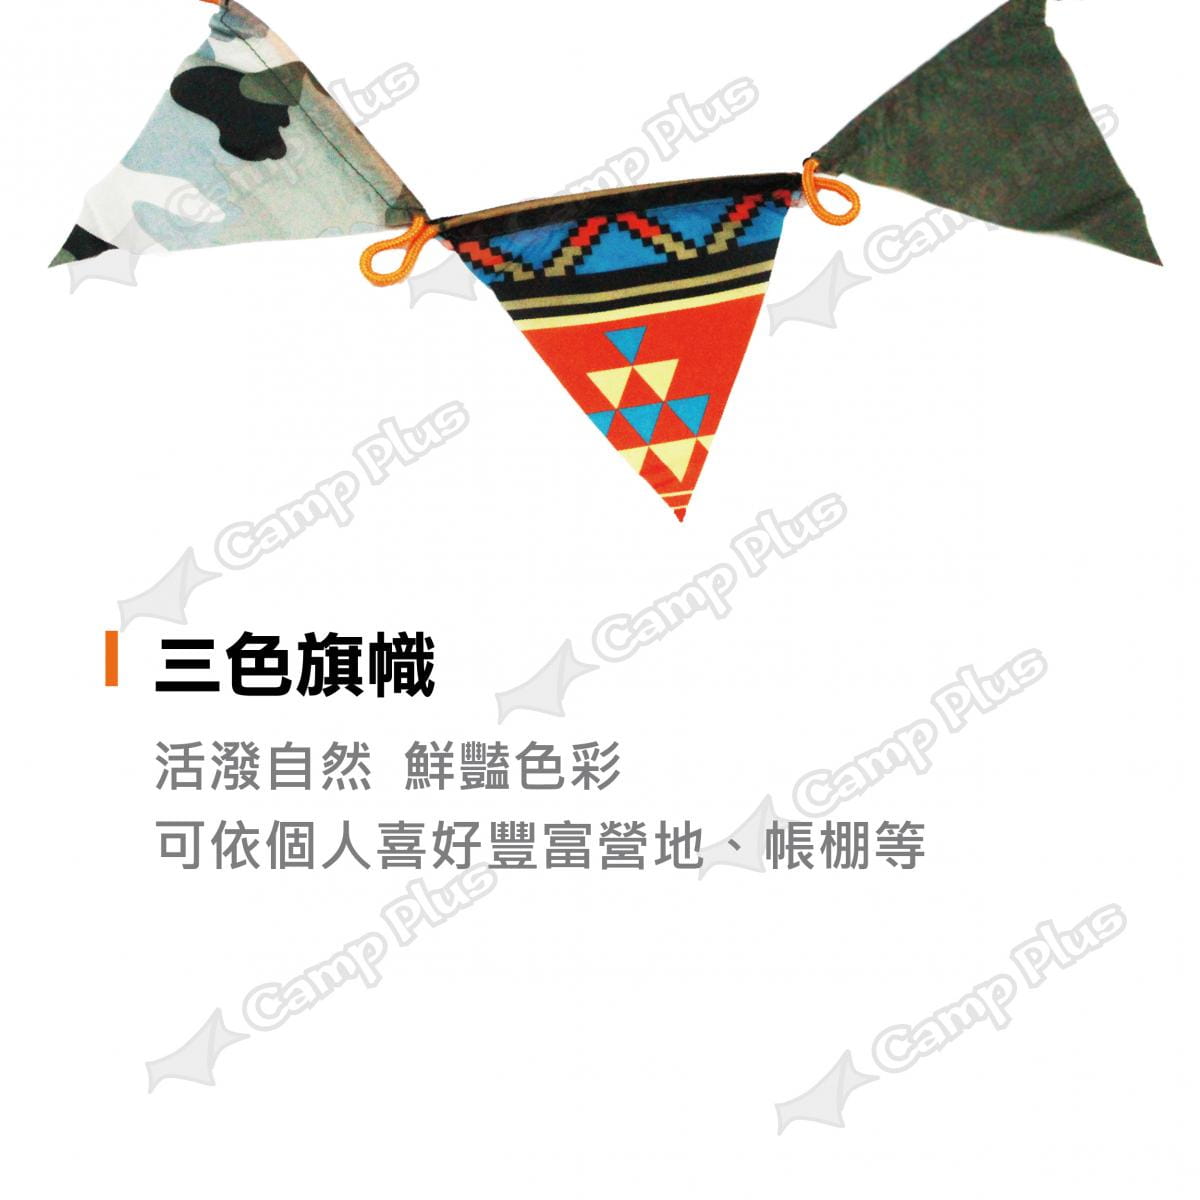 【日本LOGOS】楓彩三角旗誌 2PCS  LG71809519 裝飾小物 露營 悠遊戶外 2